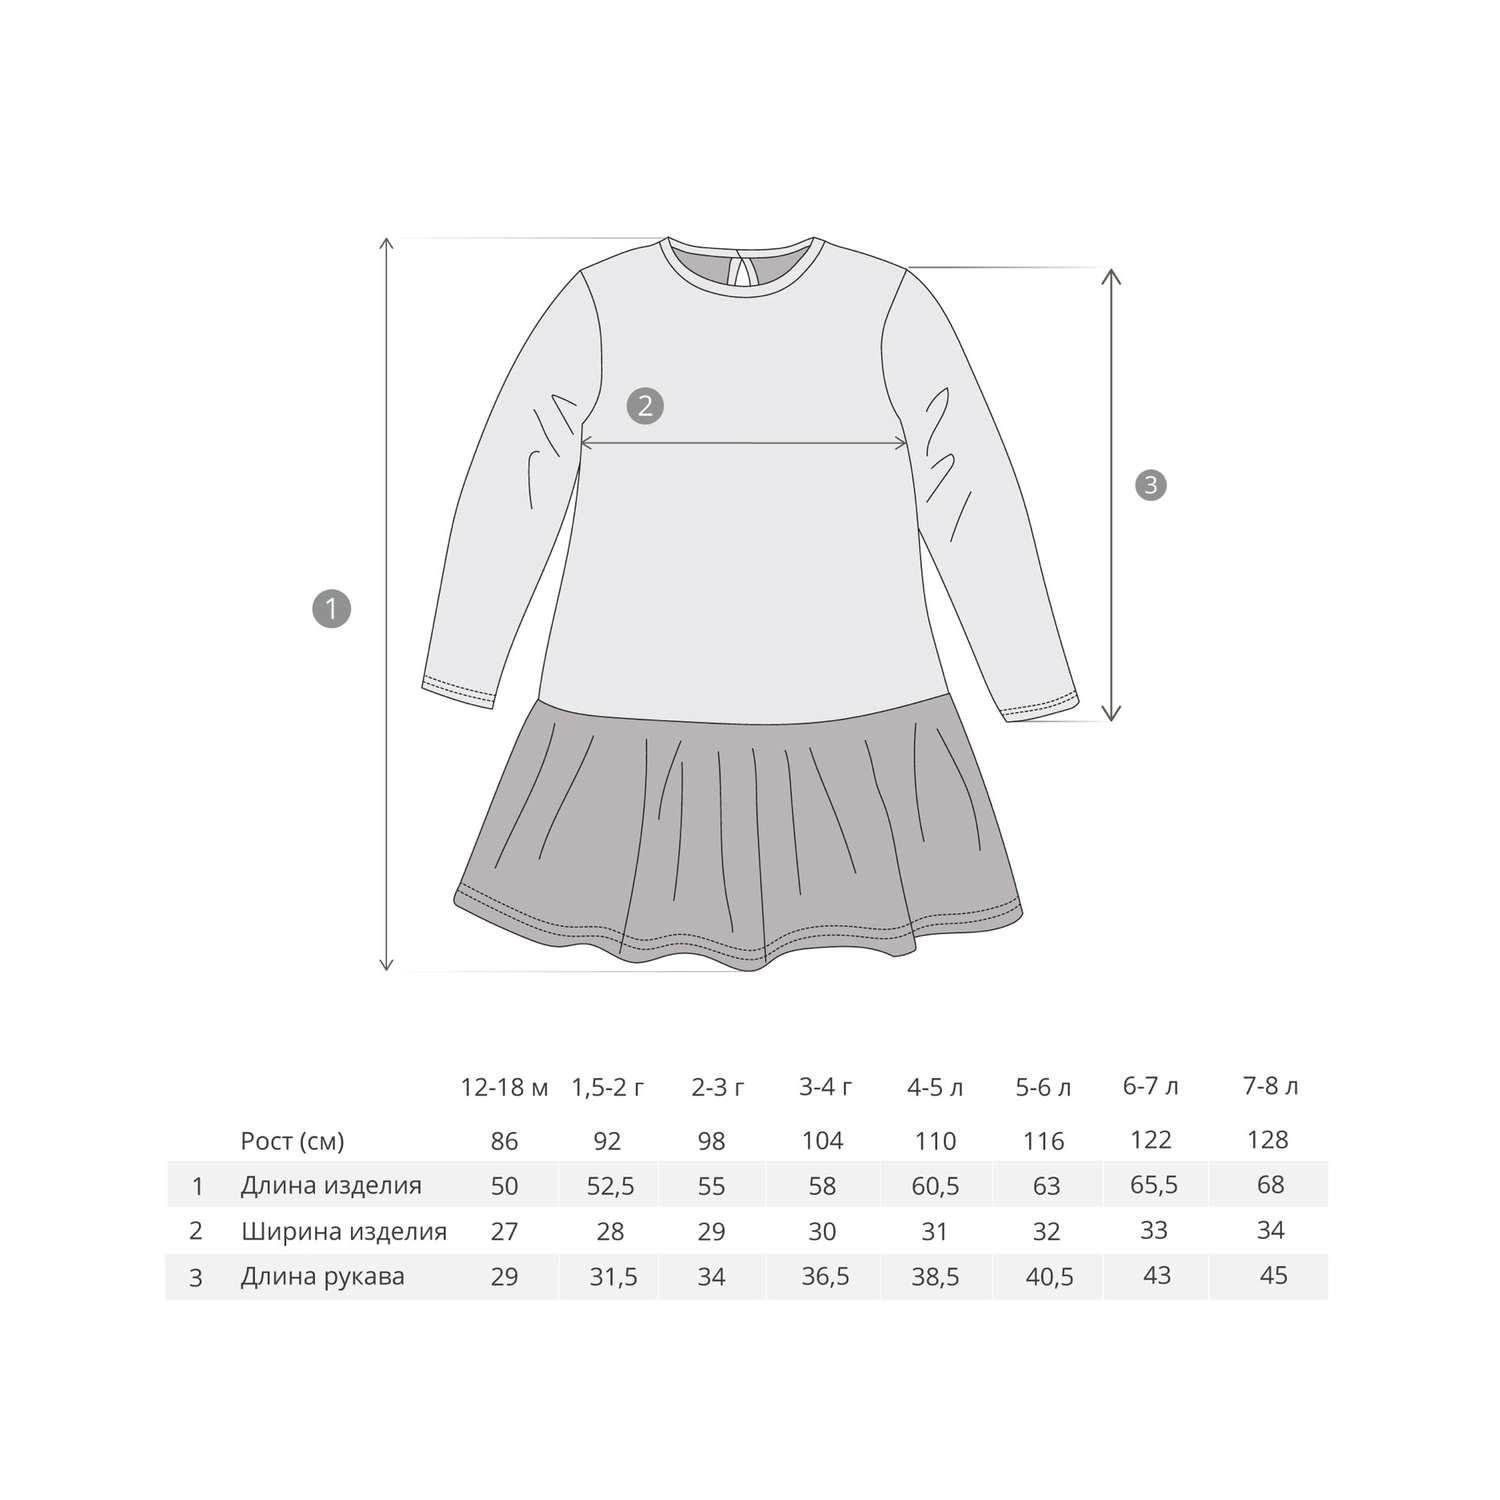 Размер детского платья